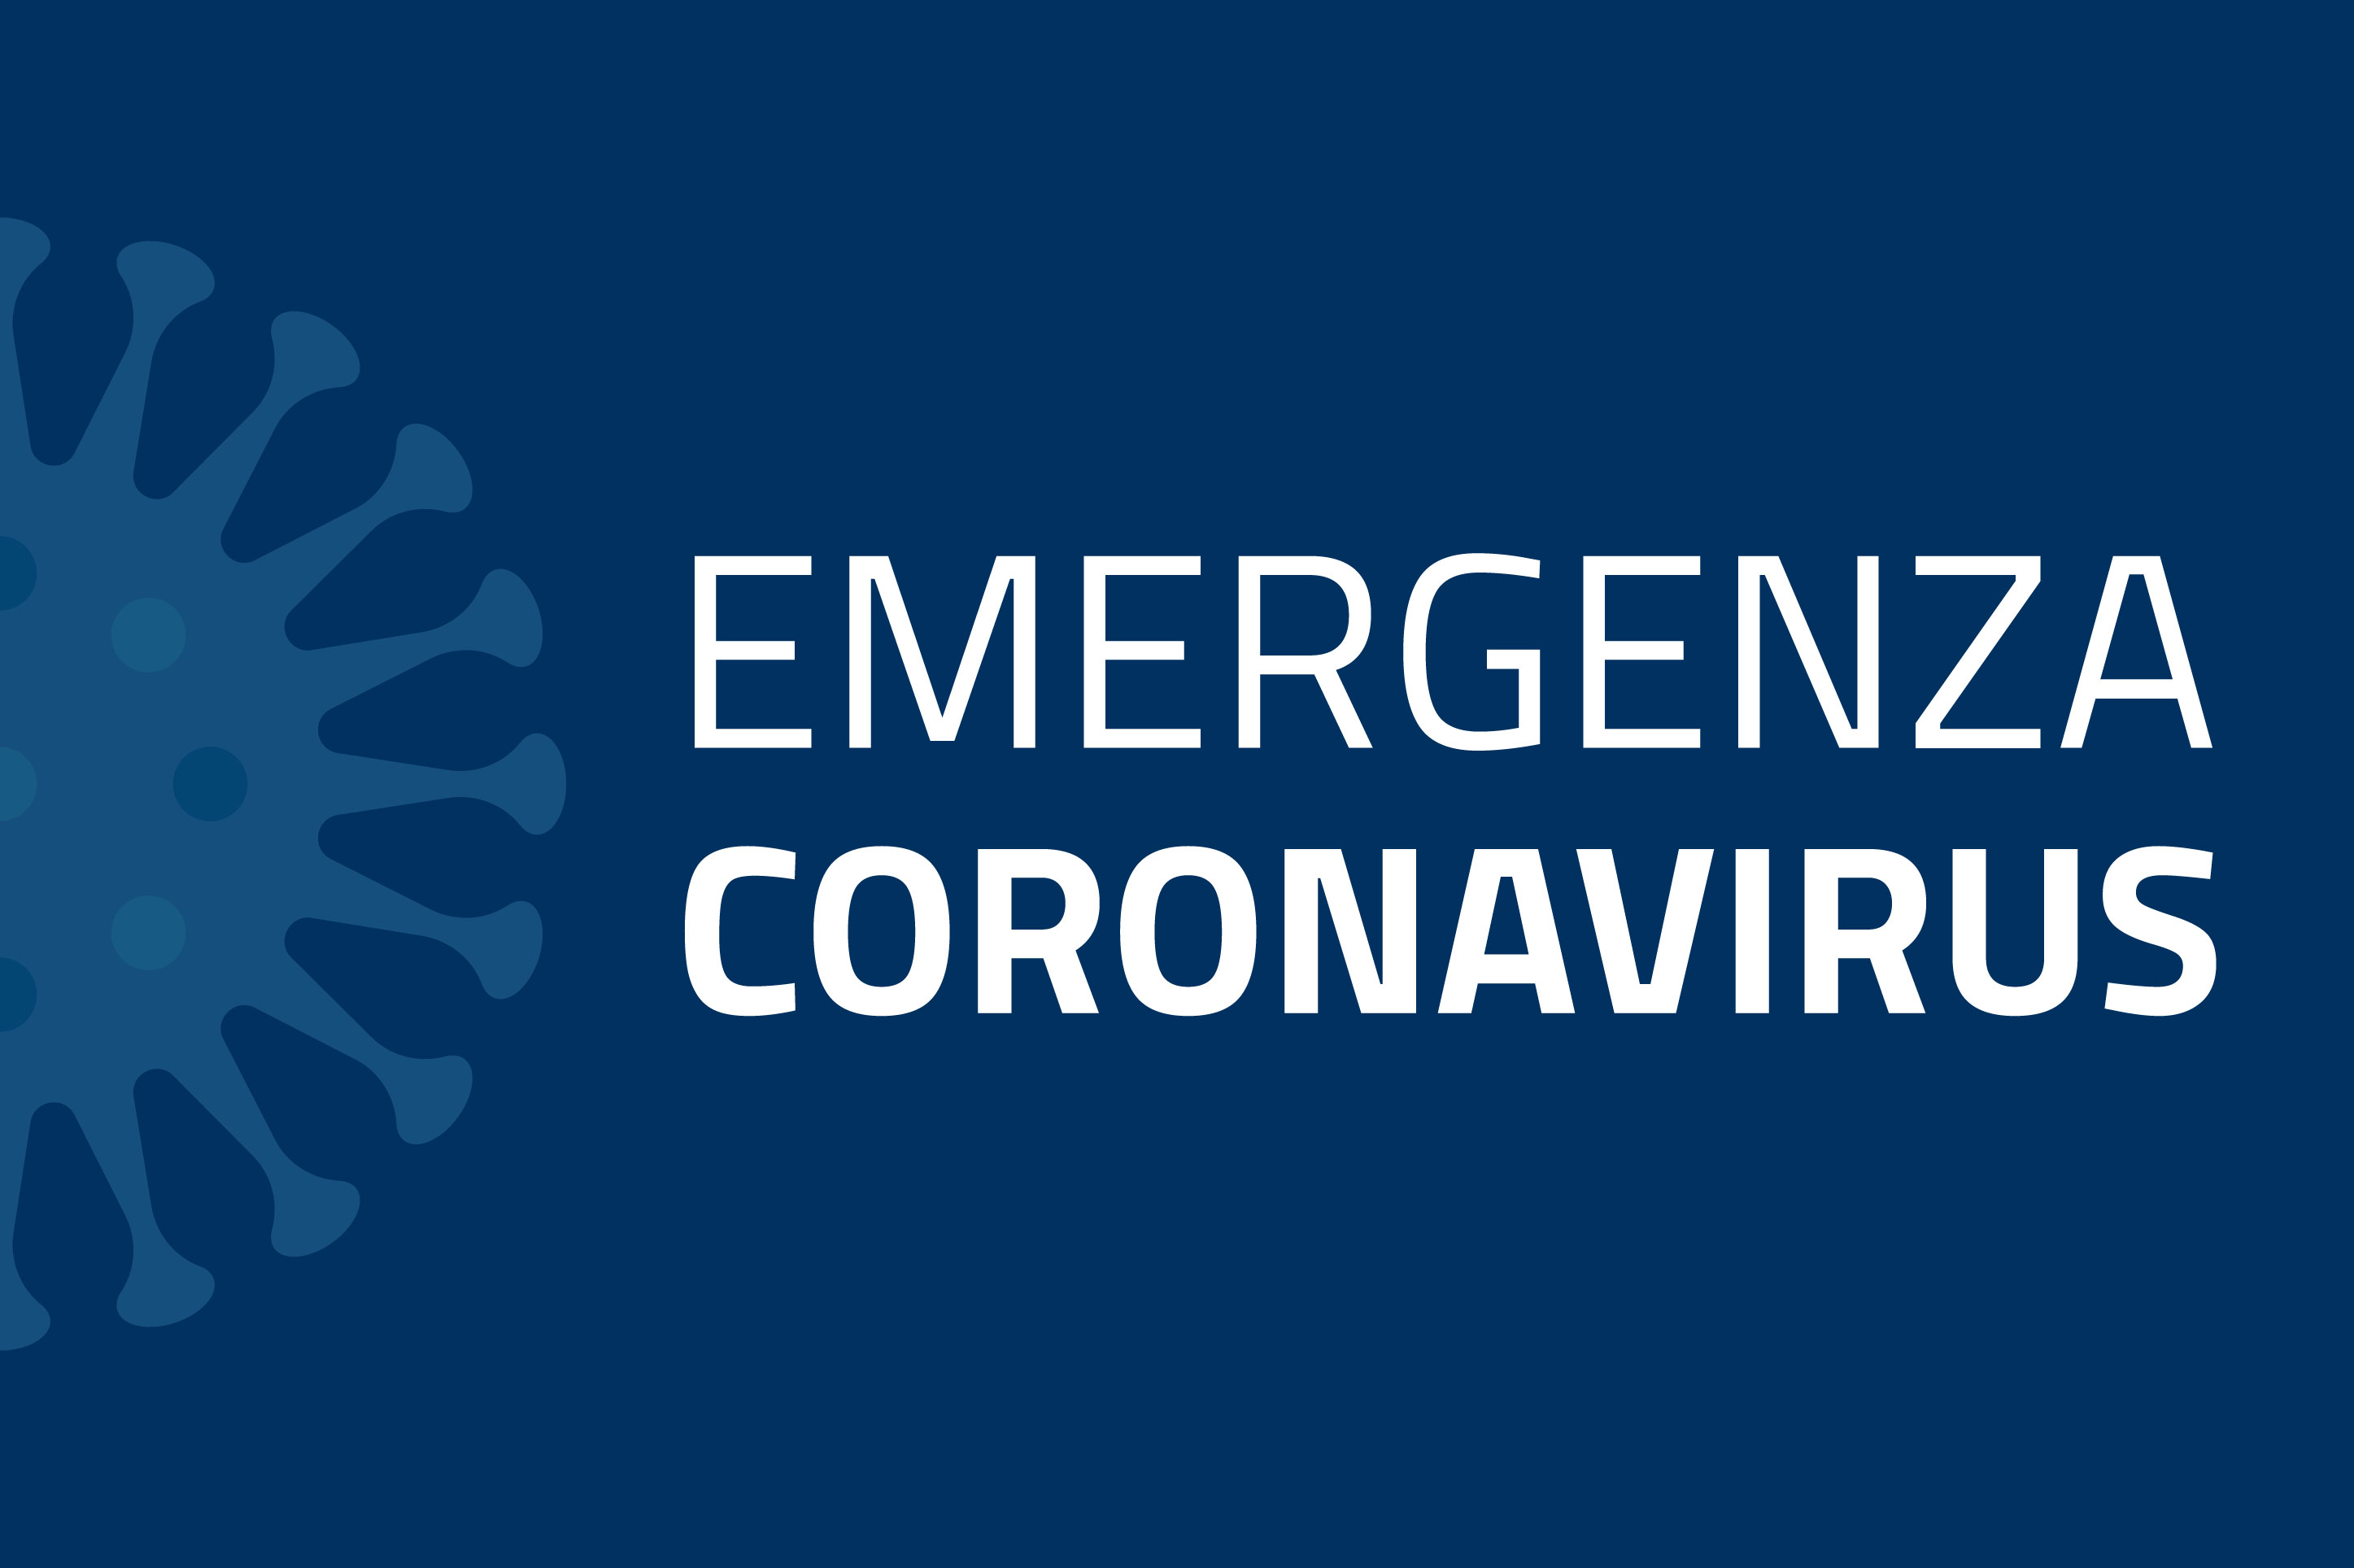 Nuovo Coronavirus